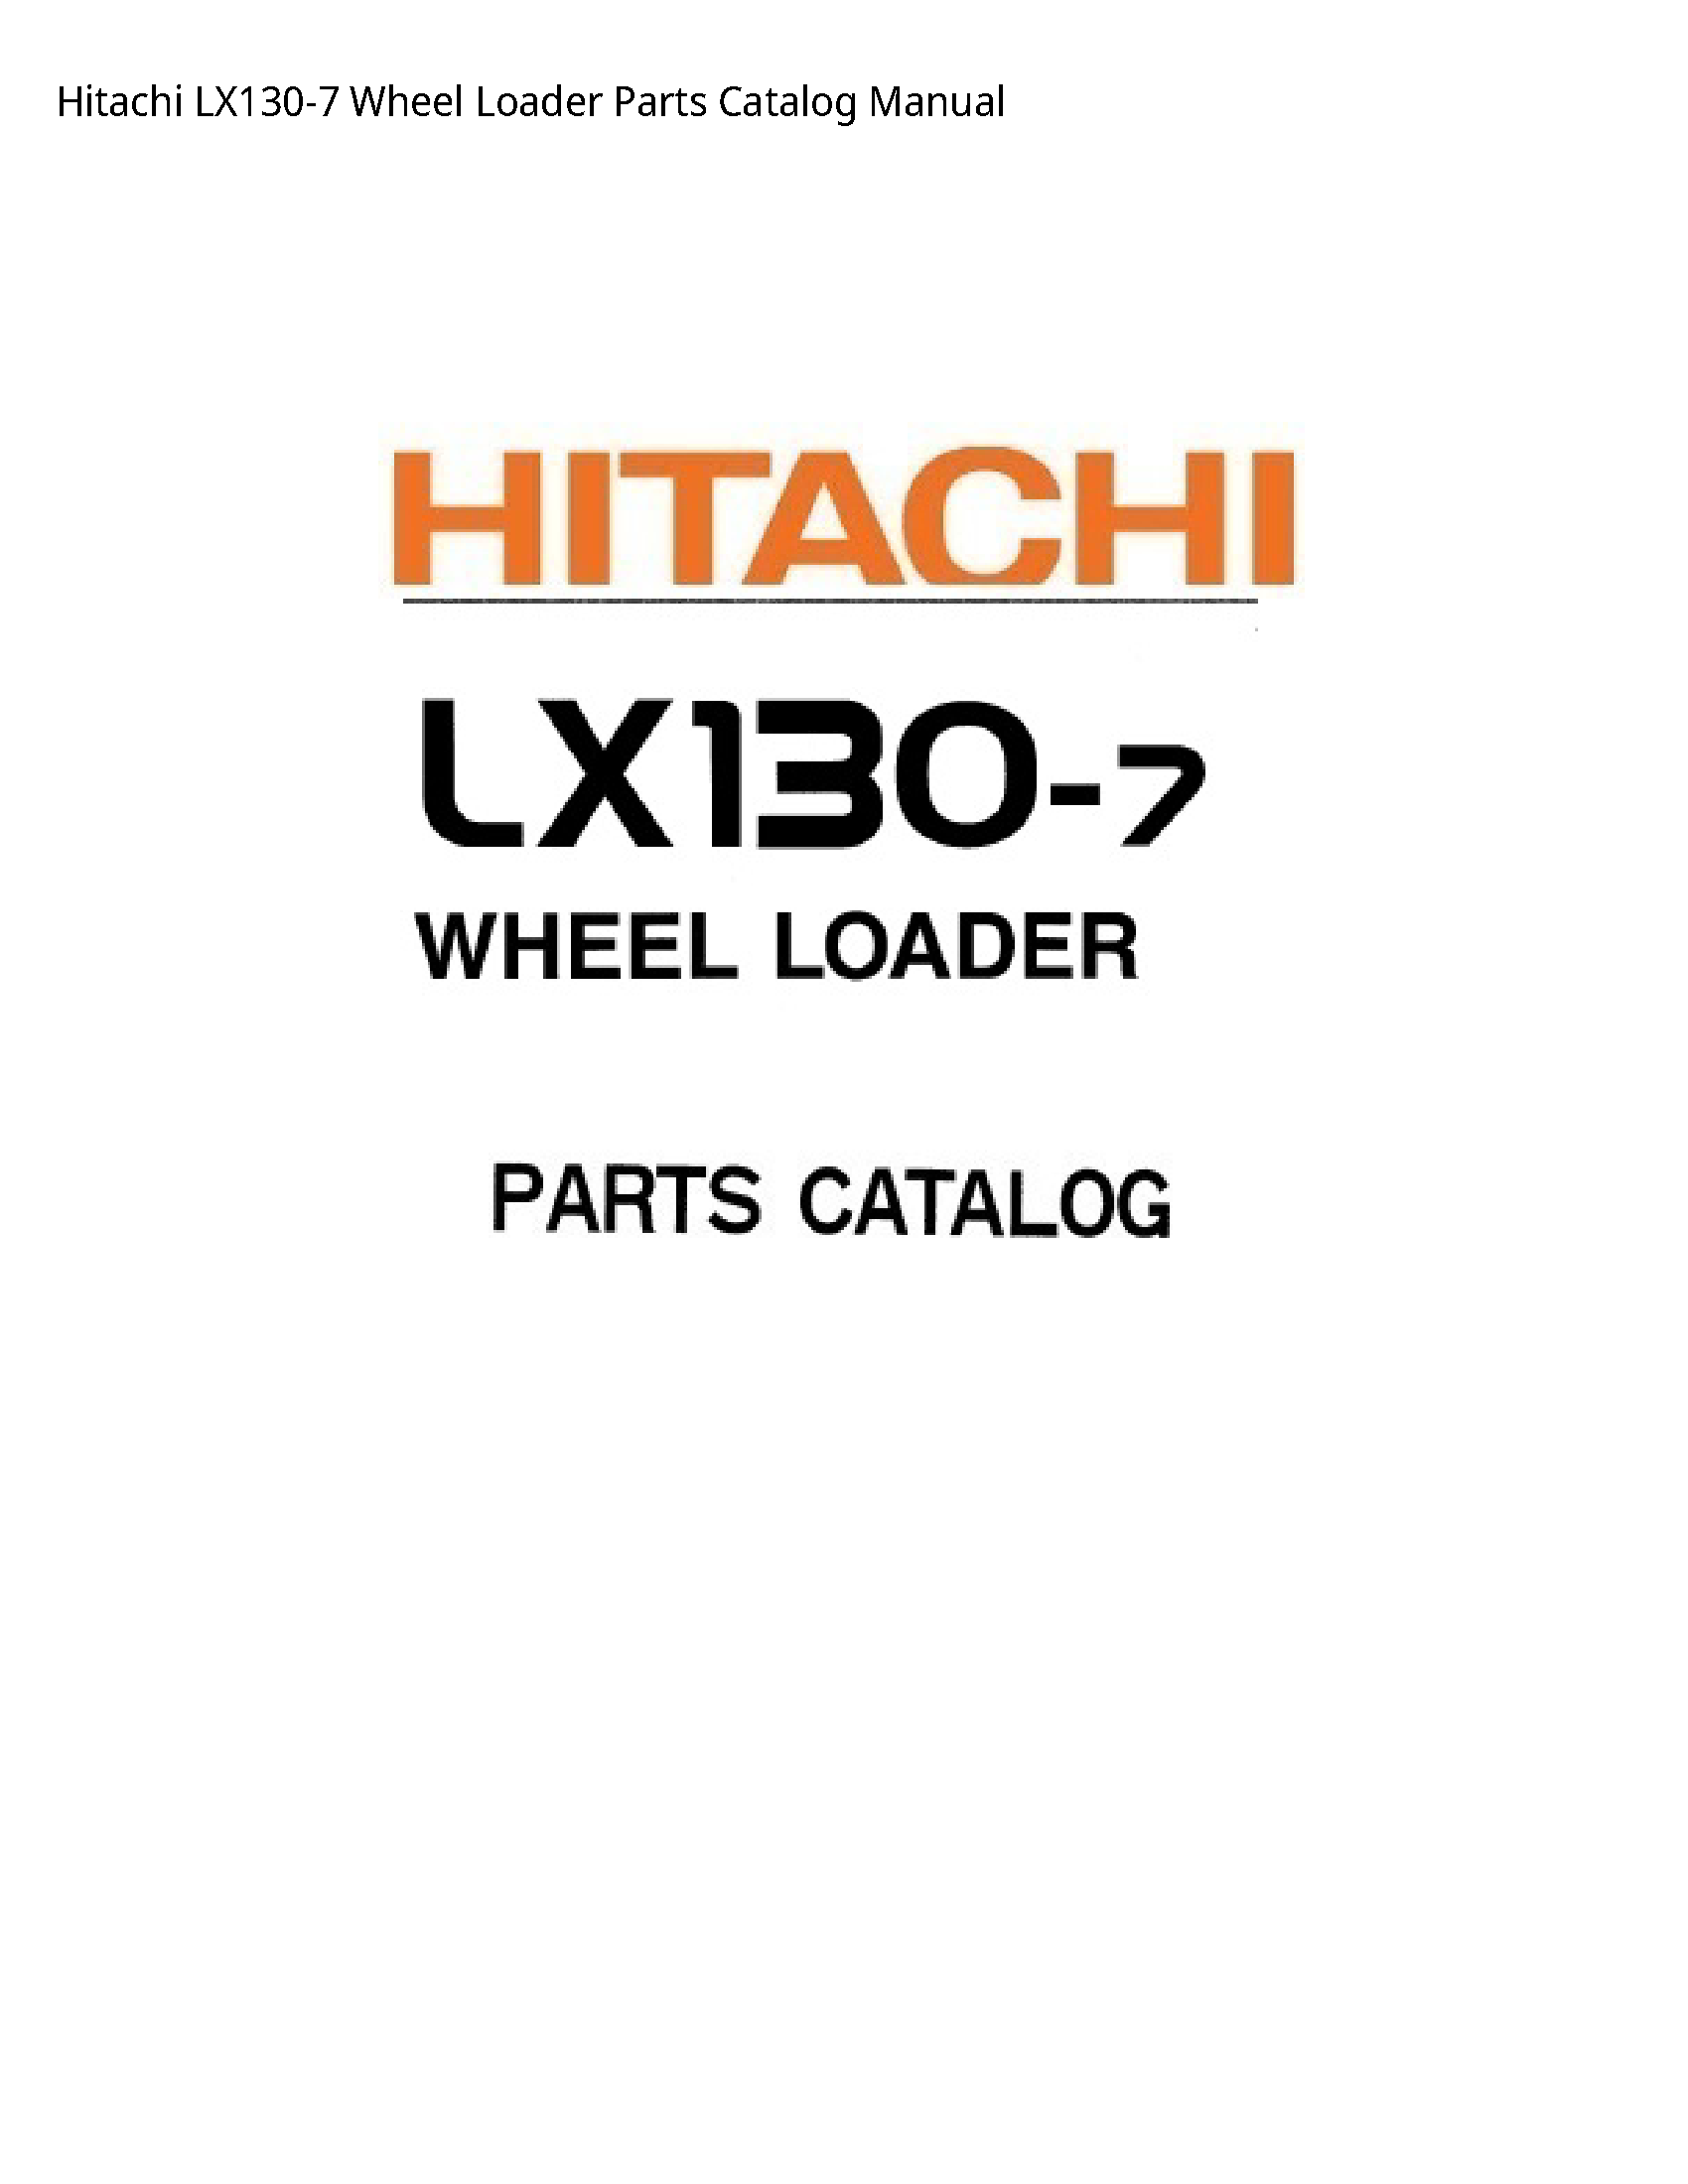 Hitachi LX130-7 Wheel Loader Parts Catalog manual